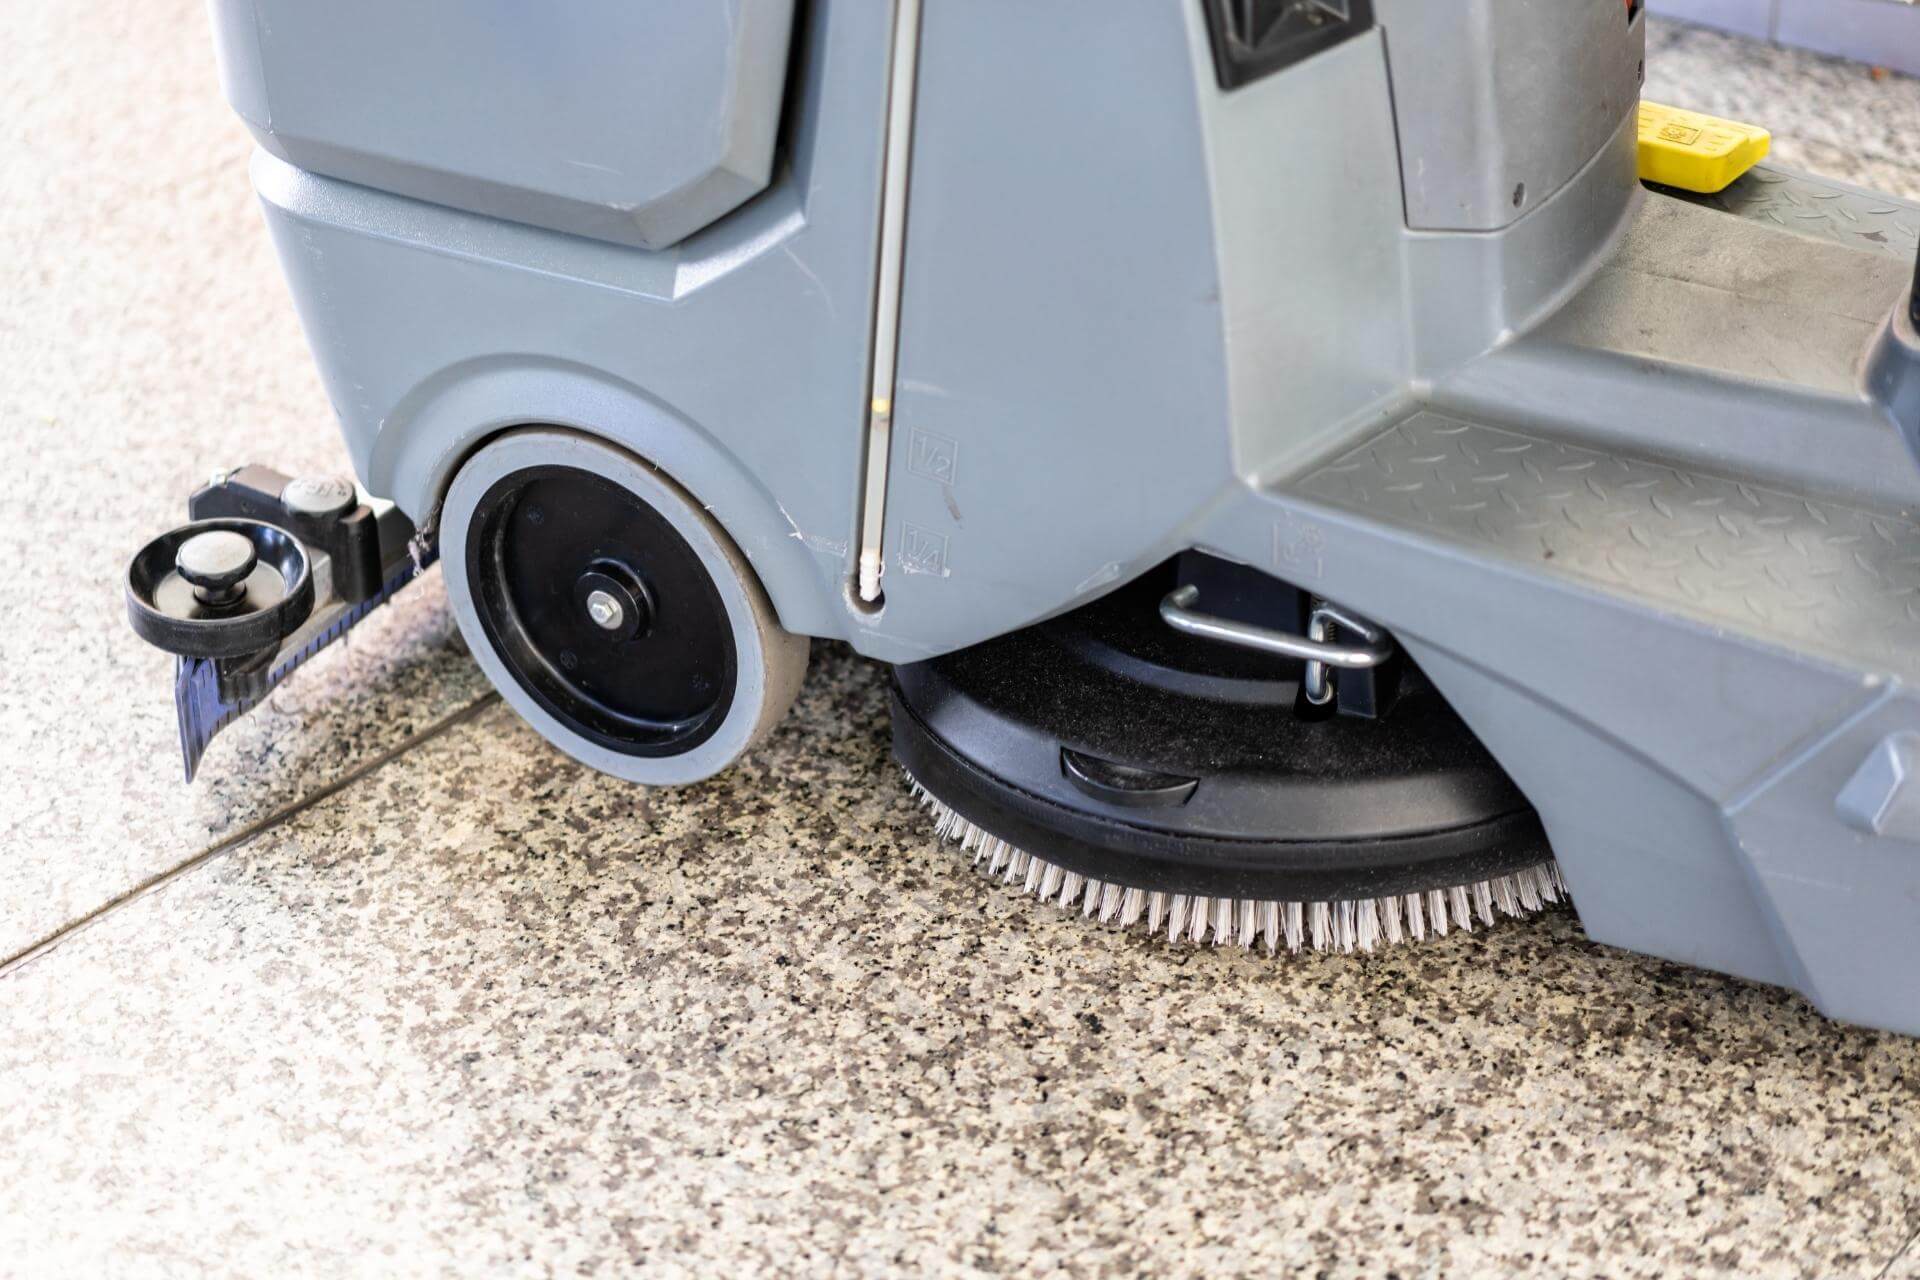 Lavapavimenti: come lavare il pavimento senza fatica 